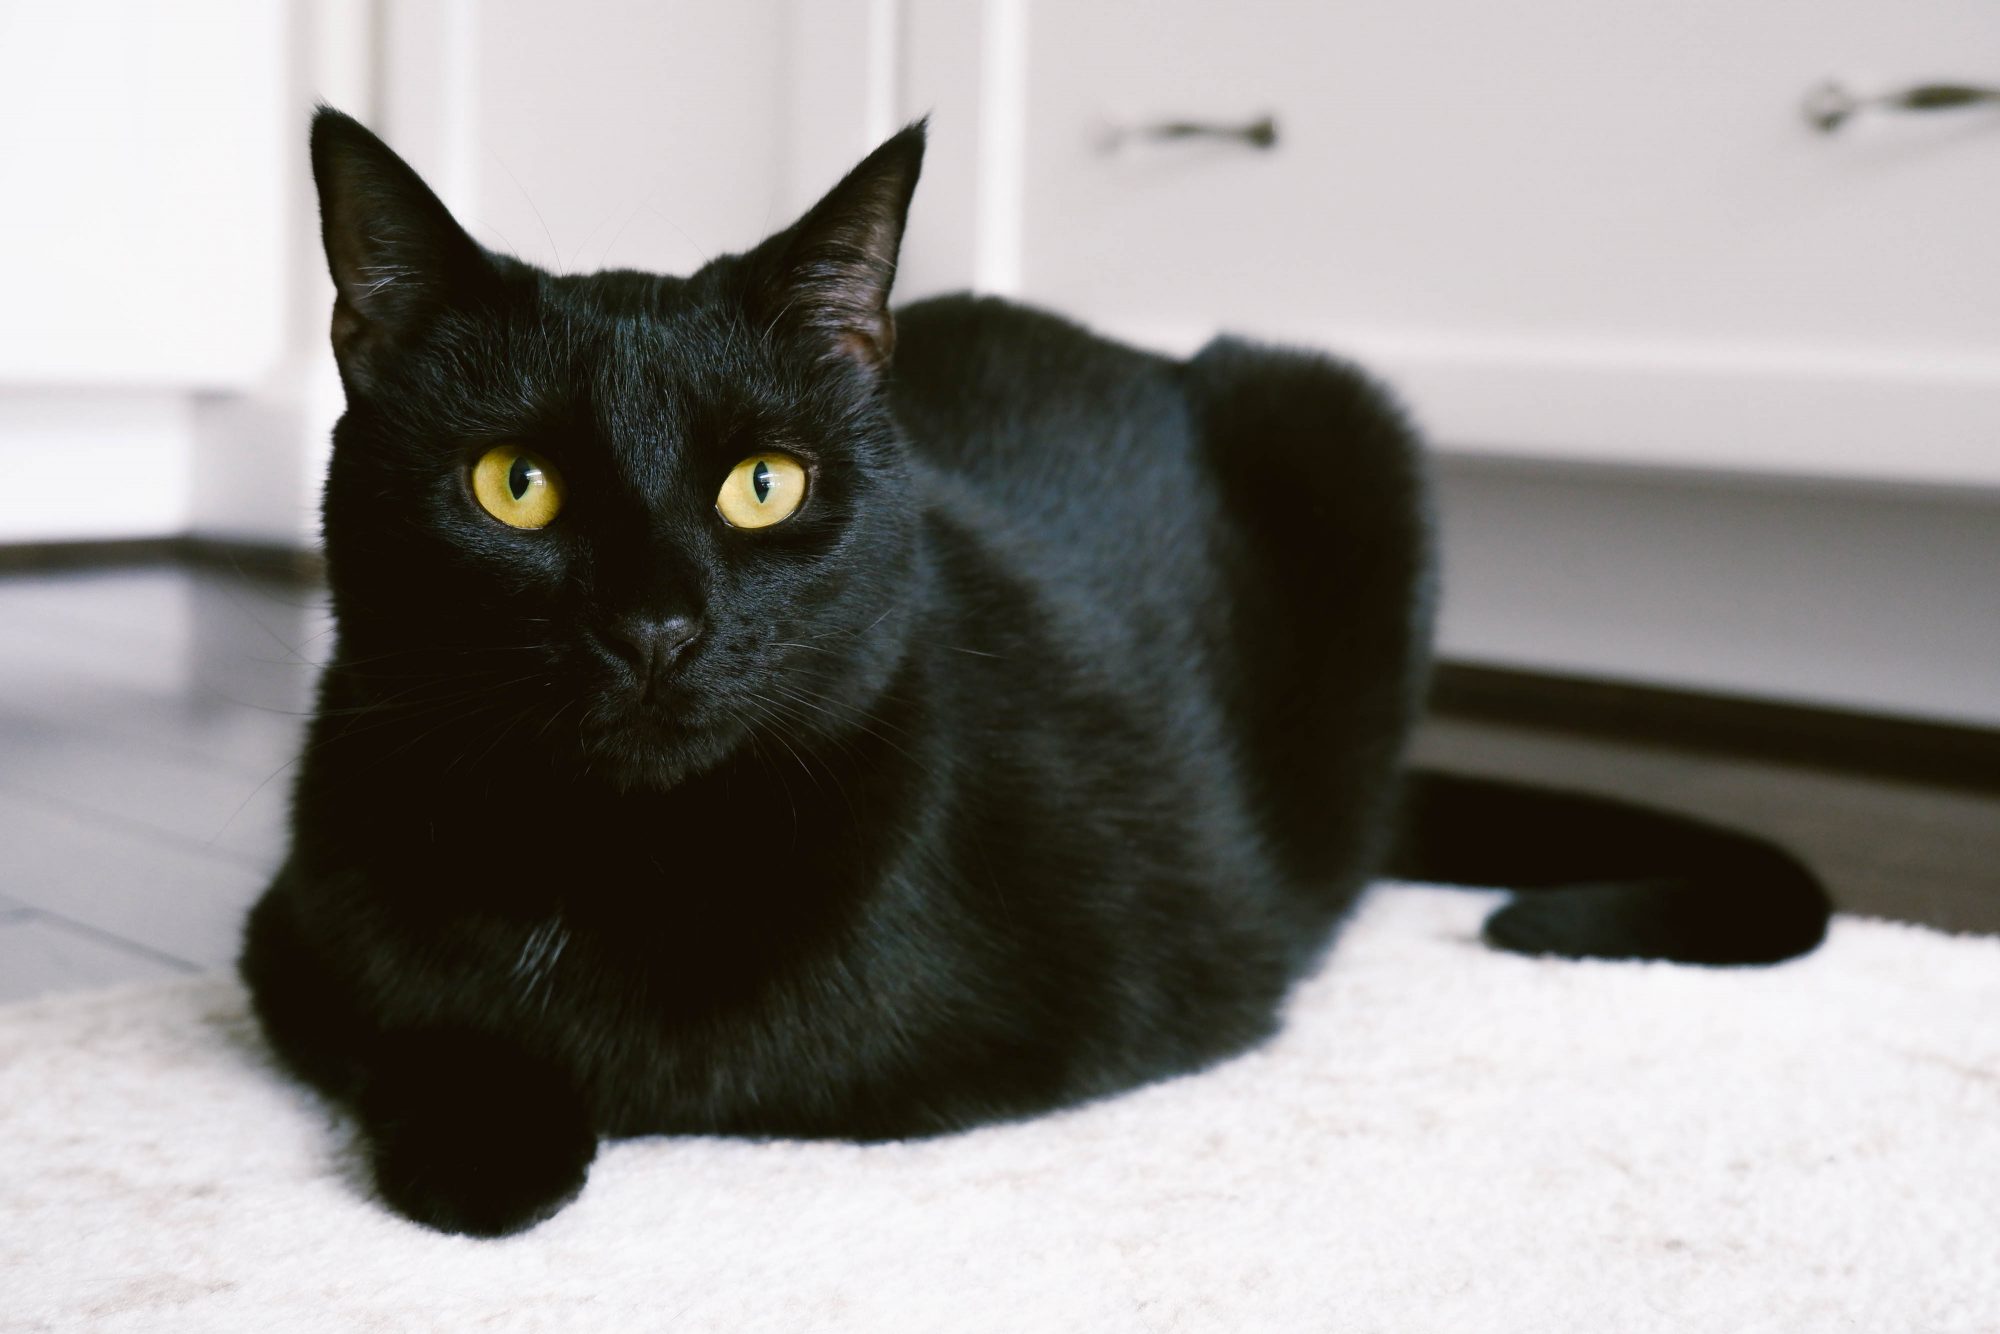 Mèo đen, còn được gọi là mèo mun, có bộ lông đen tuyền.